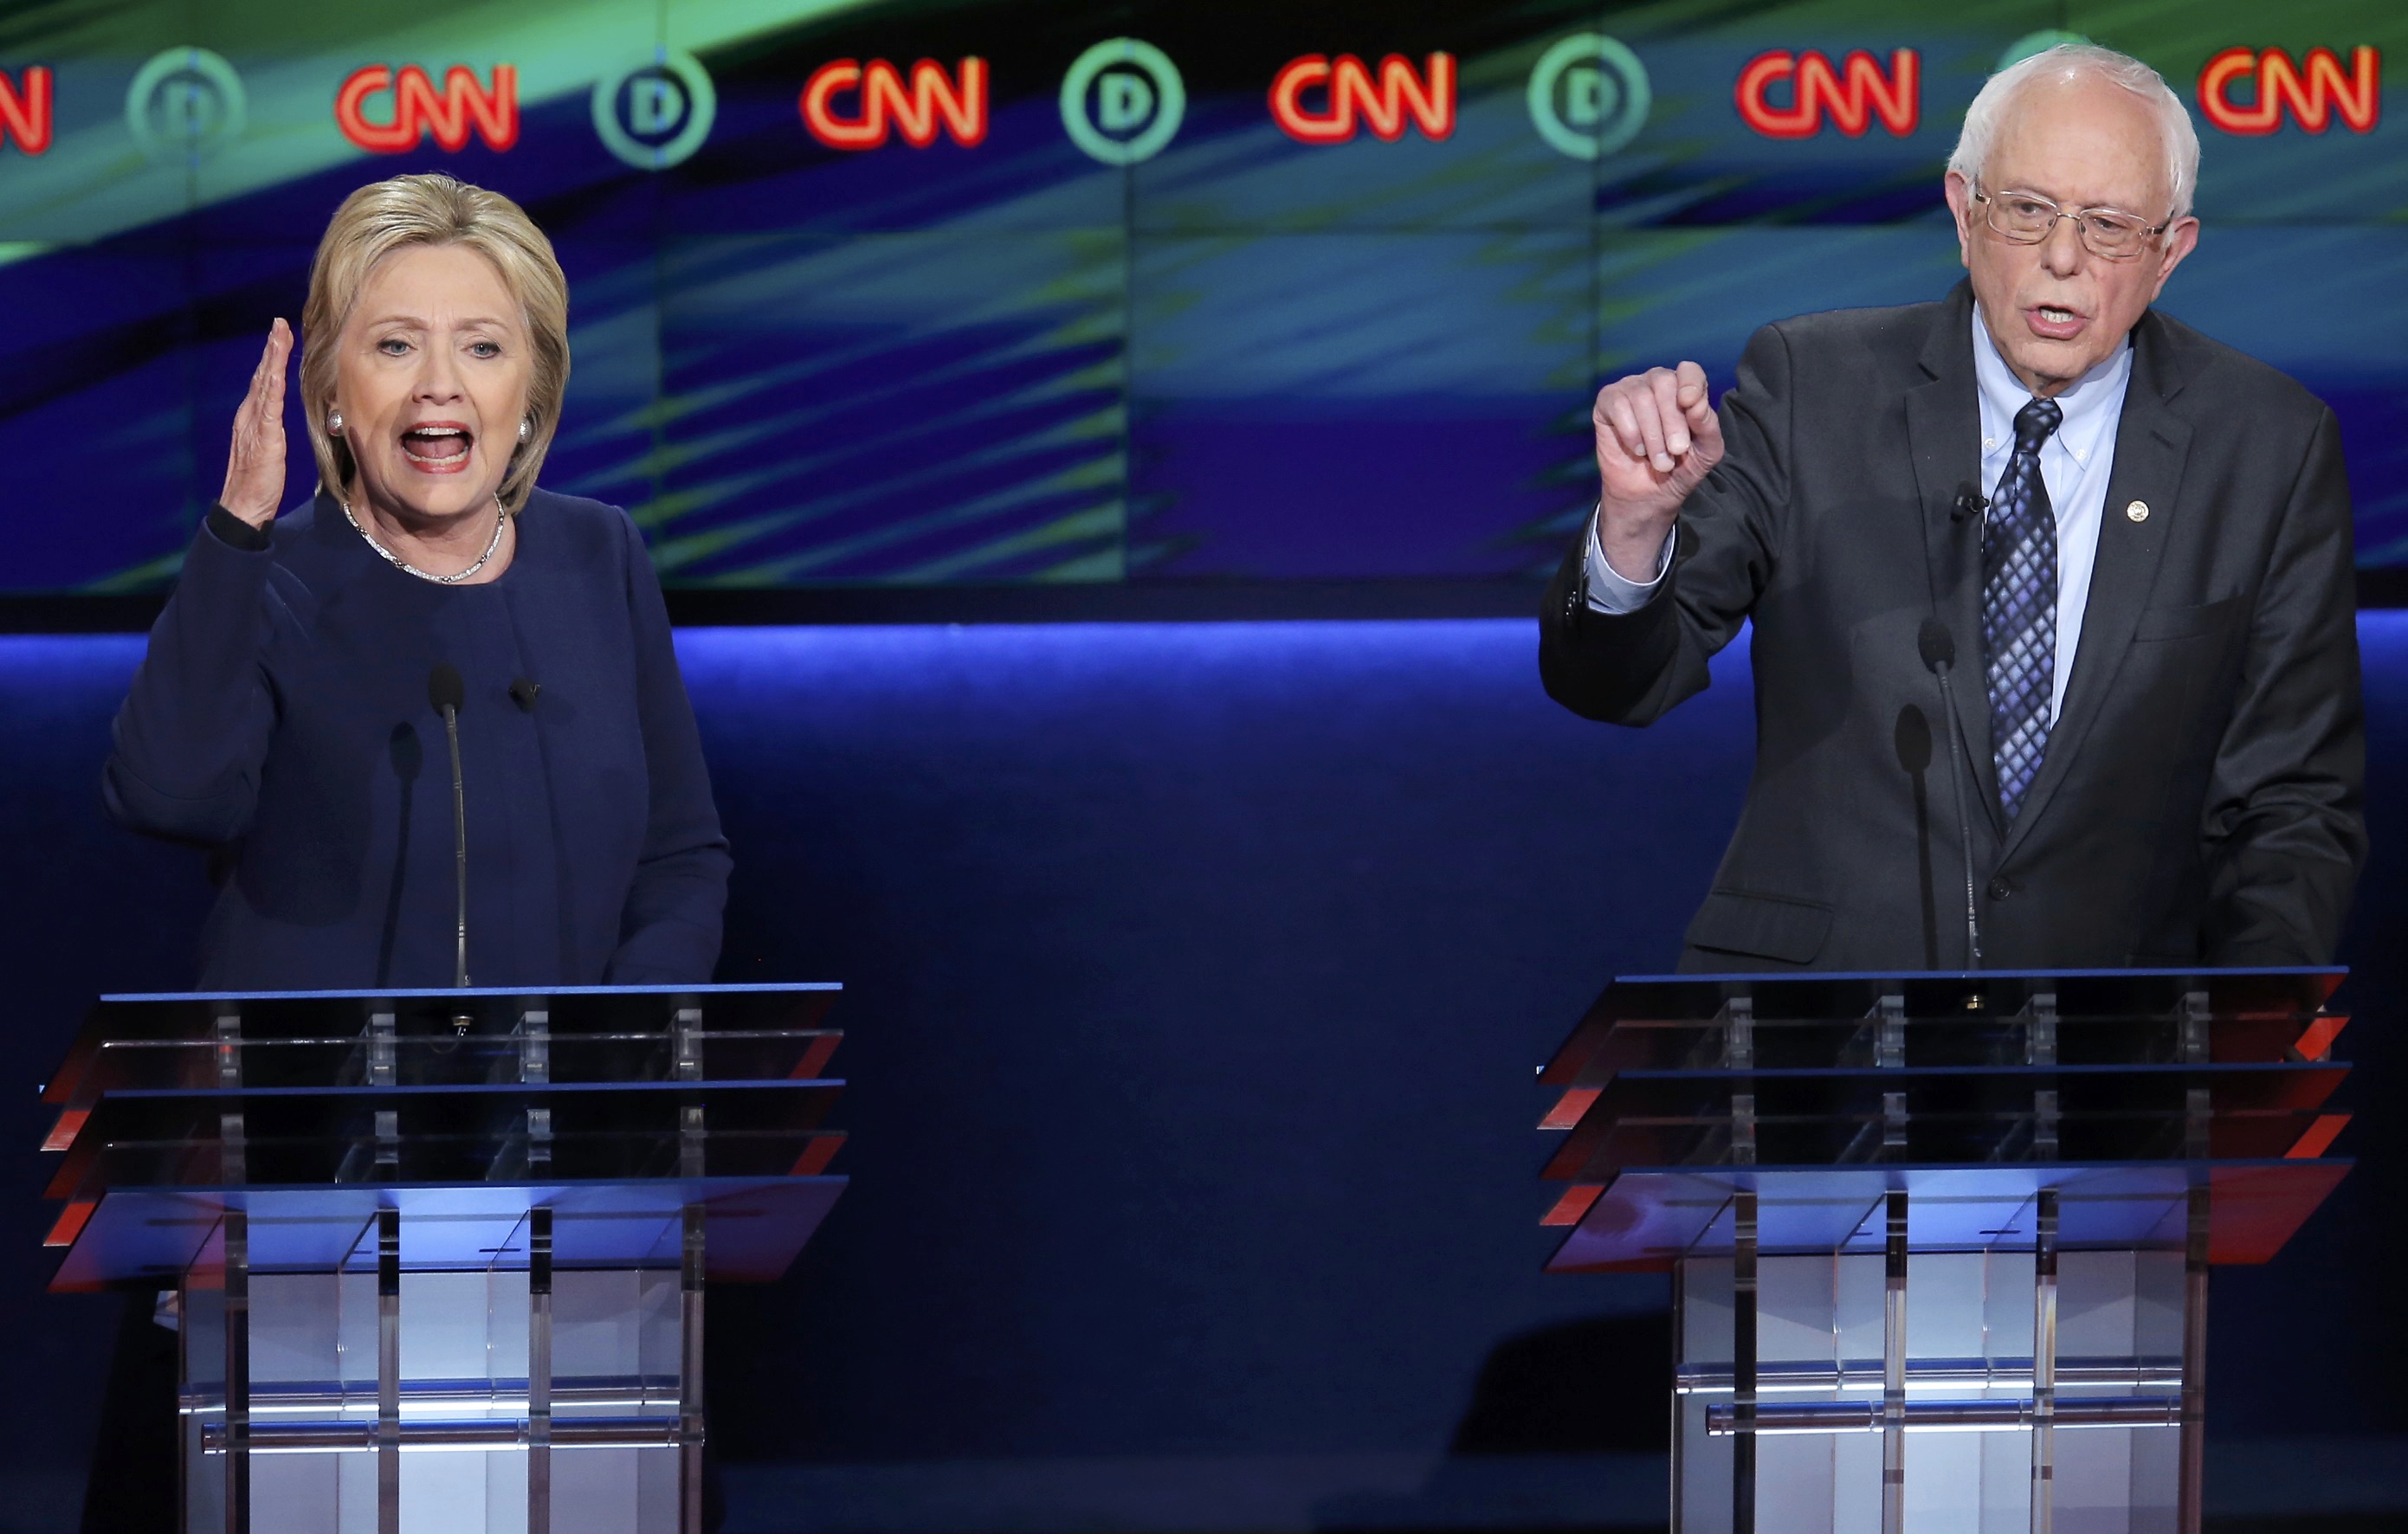 La desigualdad social y económica vuelve a protagonizar un debate entre Clinton y Sanders